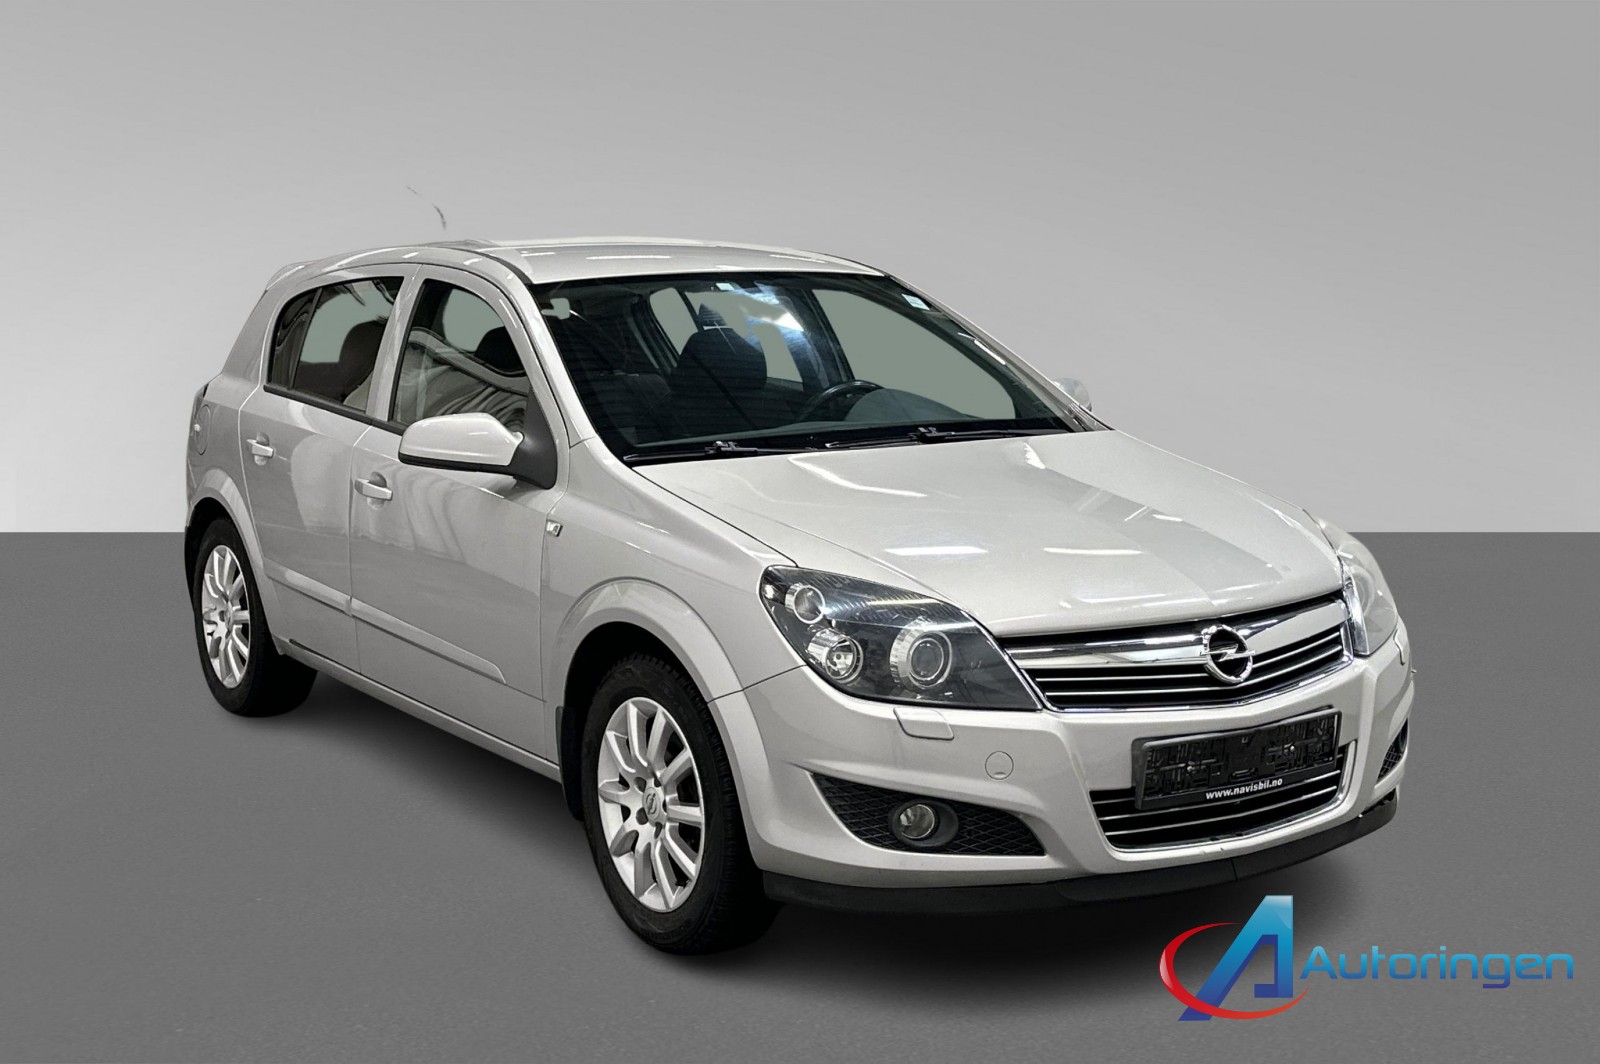 Bilde av 'Opel Astra 2009'